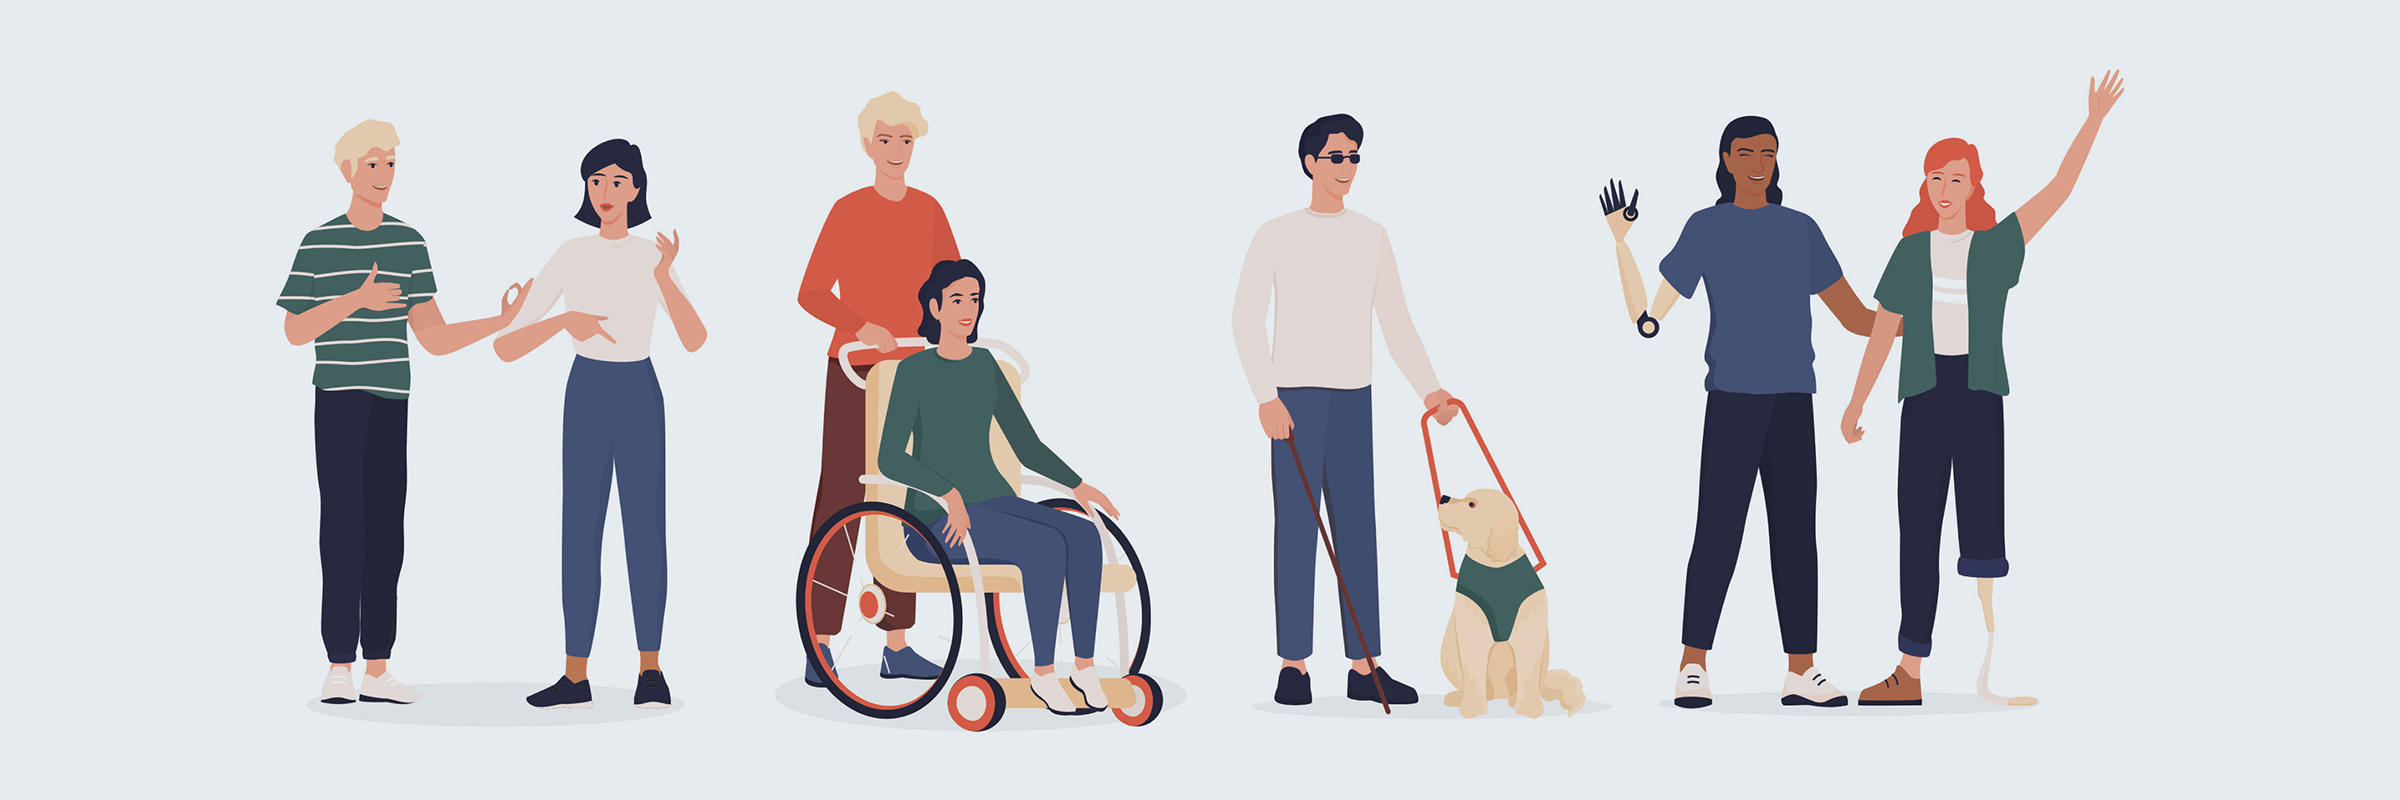 Illustrative Abbildung einer Menschengruppe mit Behinderungen